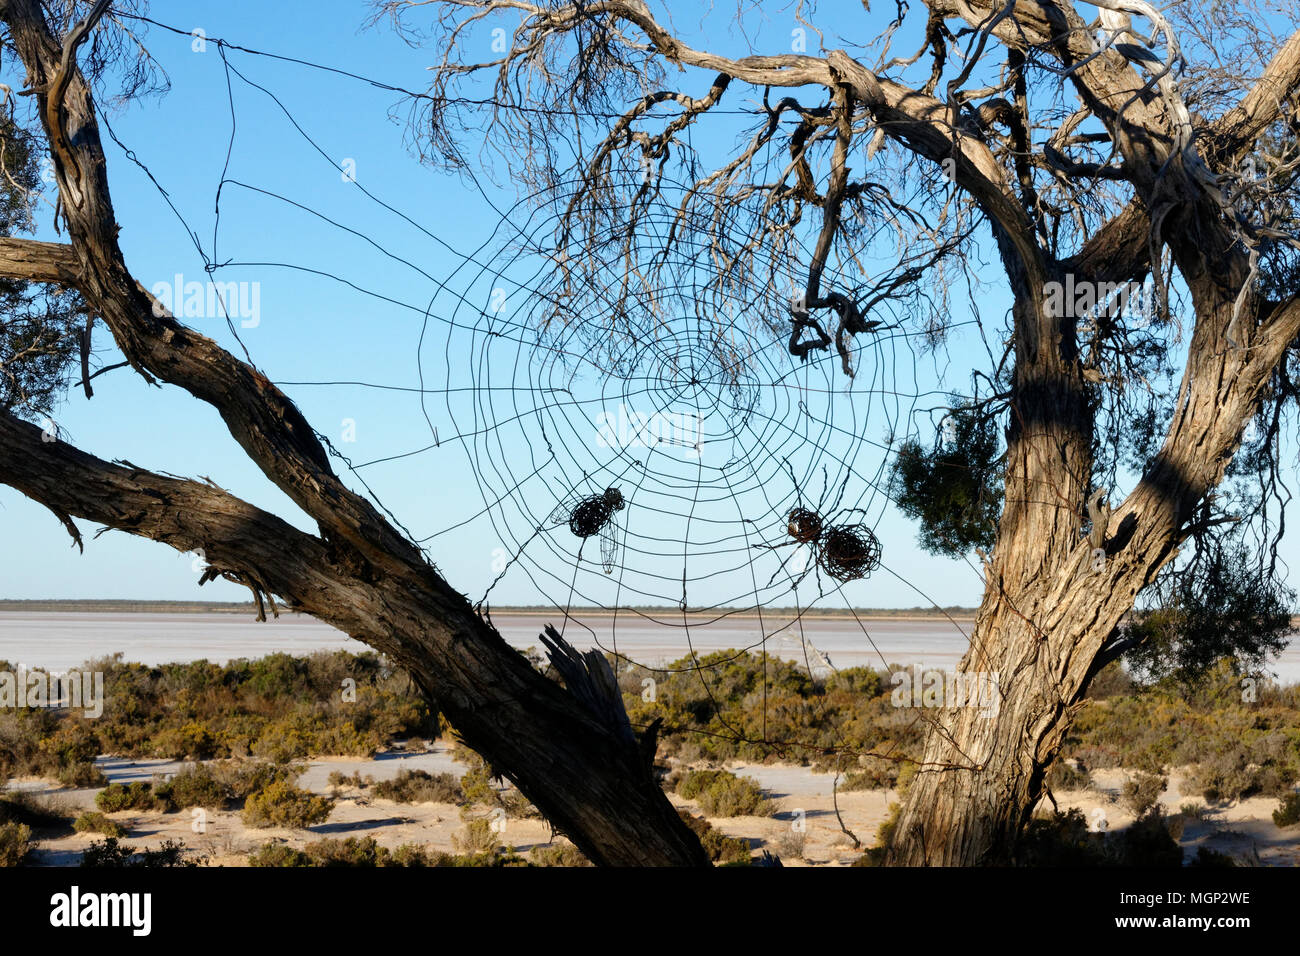 Land art des araignées d'un site web en fil métallique, lac Monger, Karara, Australie occidentale Parc Parcours Banque D'Images